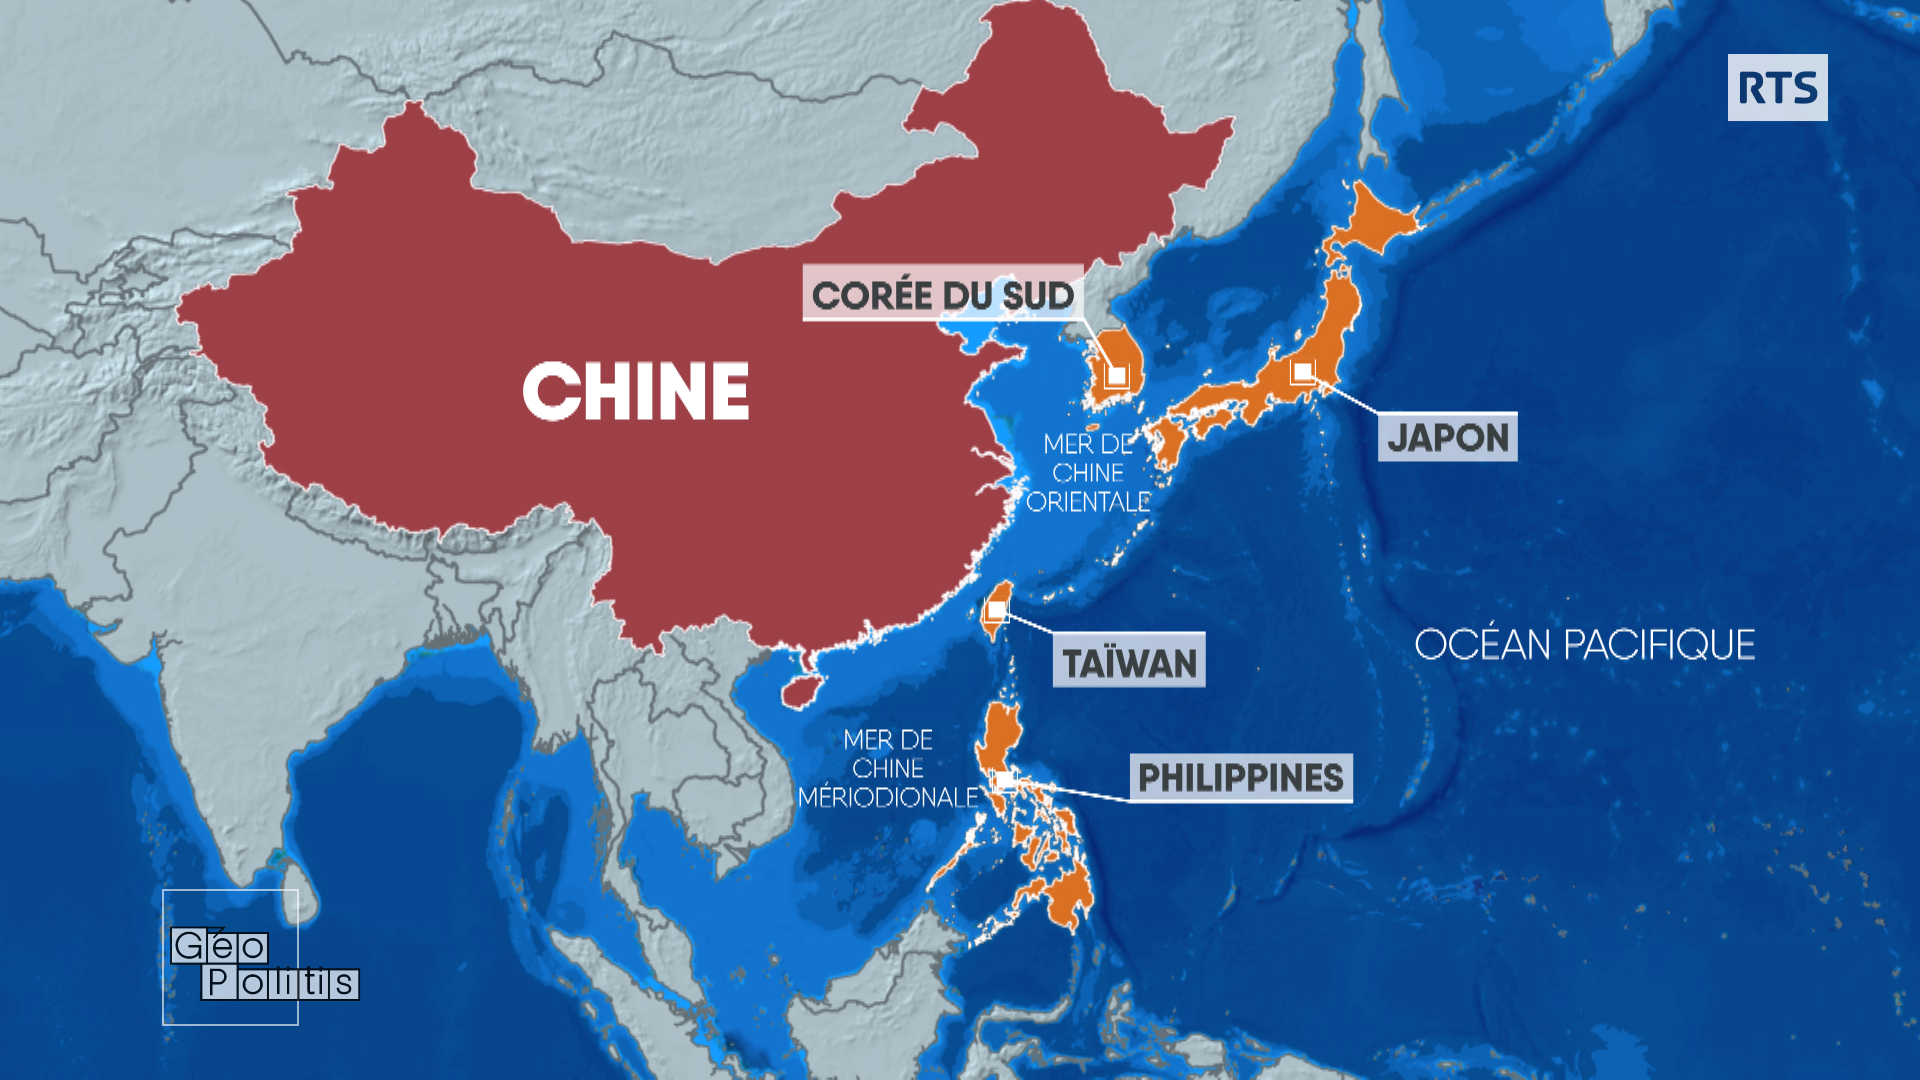 La Chine est séparée du Pacifique par une chaîne d'îles (Corée du Sud, Japon, Taïwan, Philippines) alliées des Etats-Unis. [RTS - Géopolitis]